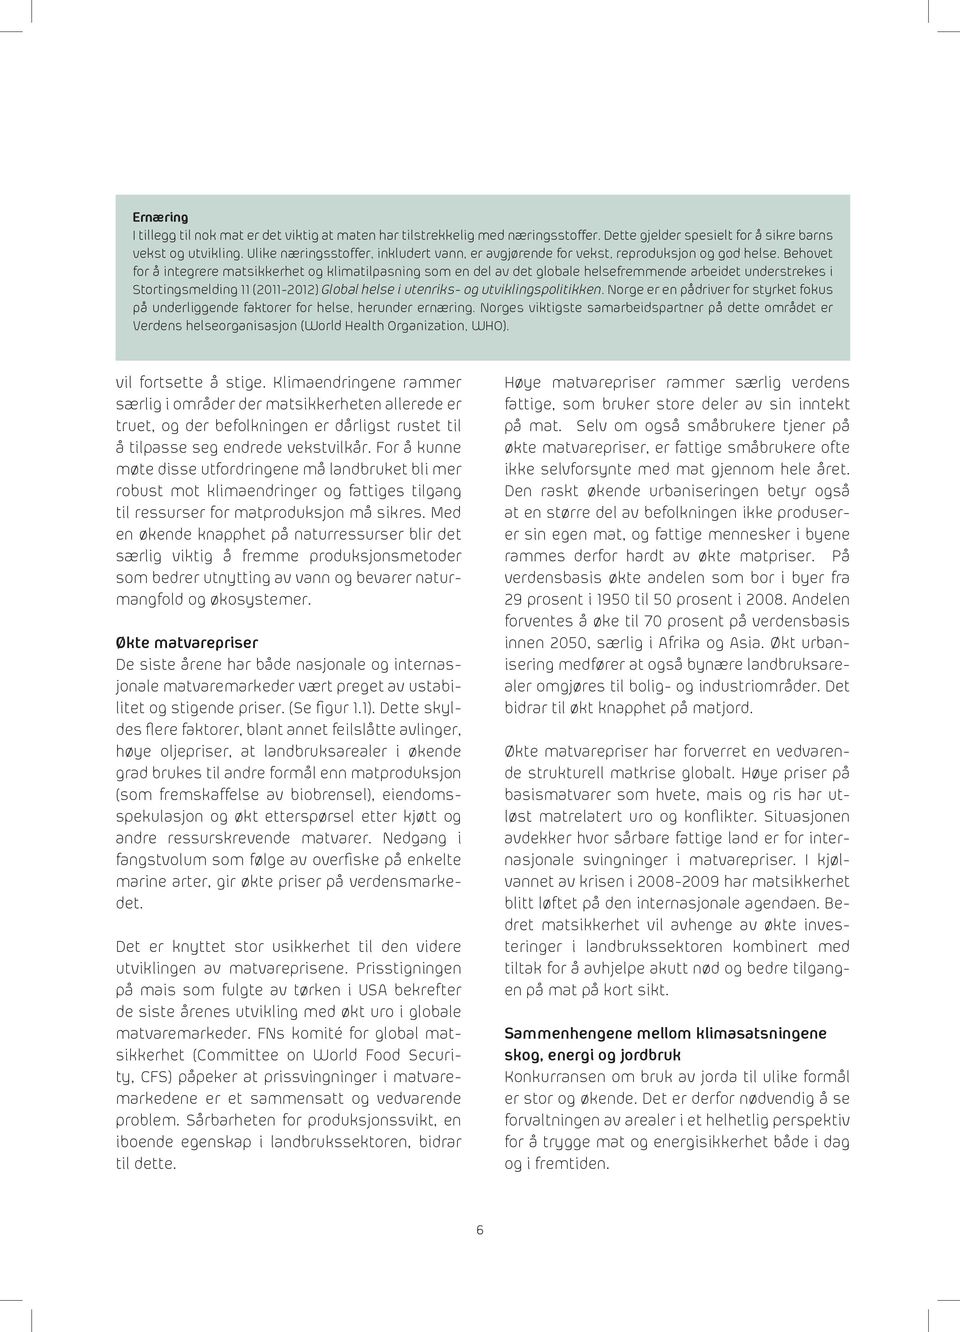 Behovet for å integrere matsikkerhet og klimatilpasning som en del av det globale helsefremmende arbeidet understrekes i Stortingsmelding 11 (2011-2012) Global helse i utenriks- og